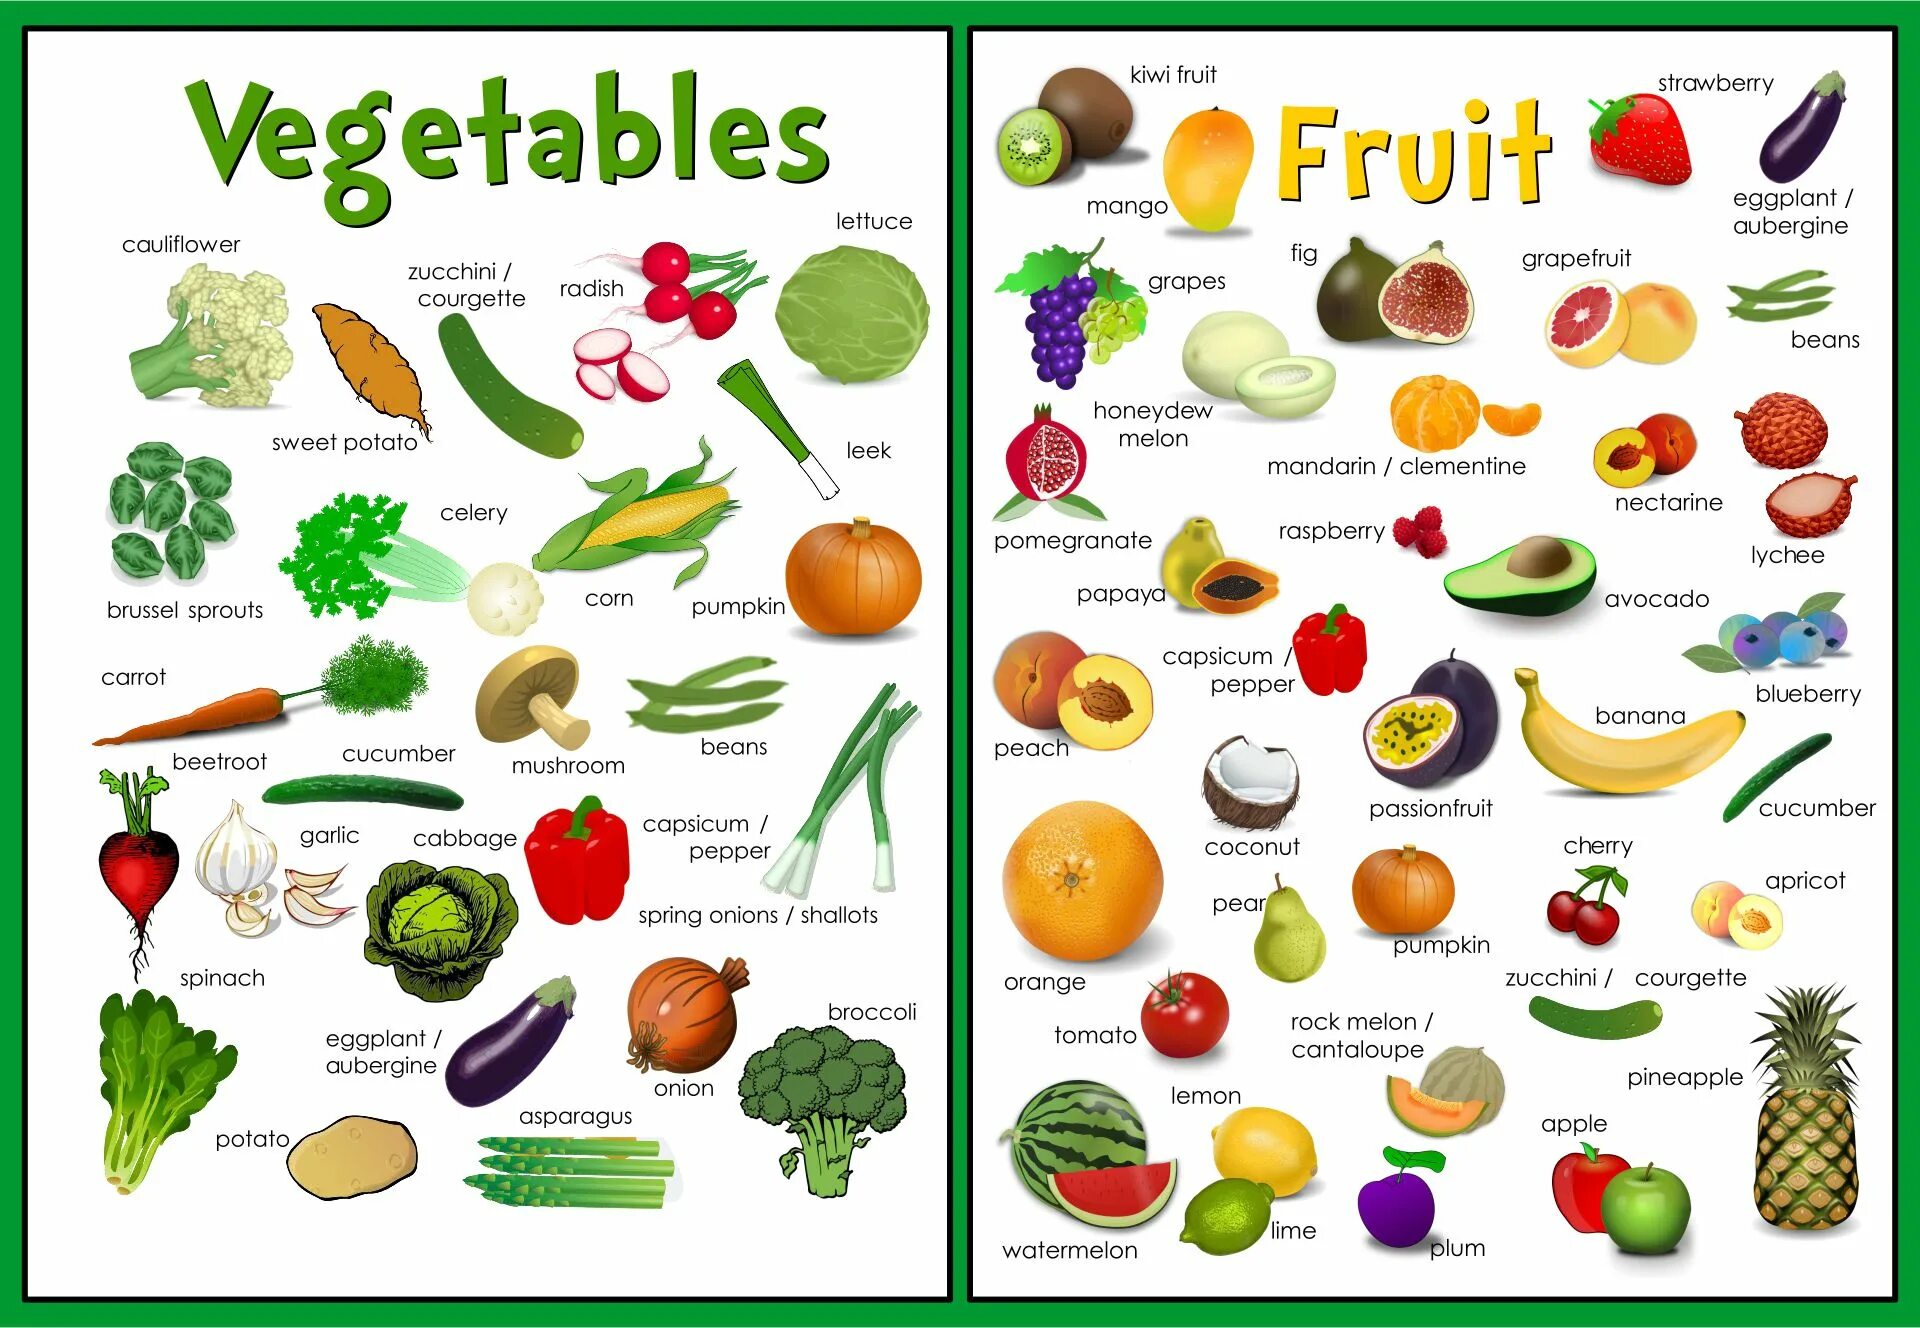 Фрукты и овощи на английском. Плакат овощи и фрукты на английском. Овощи на английском языке для детей. Vegetables плакат.